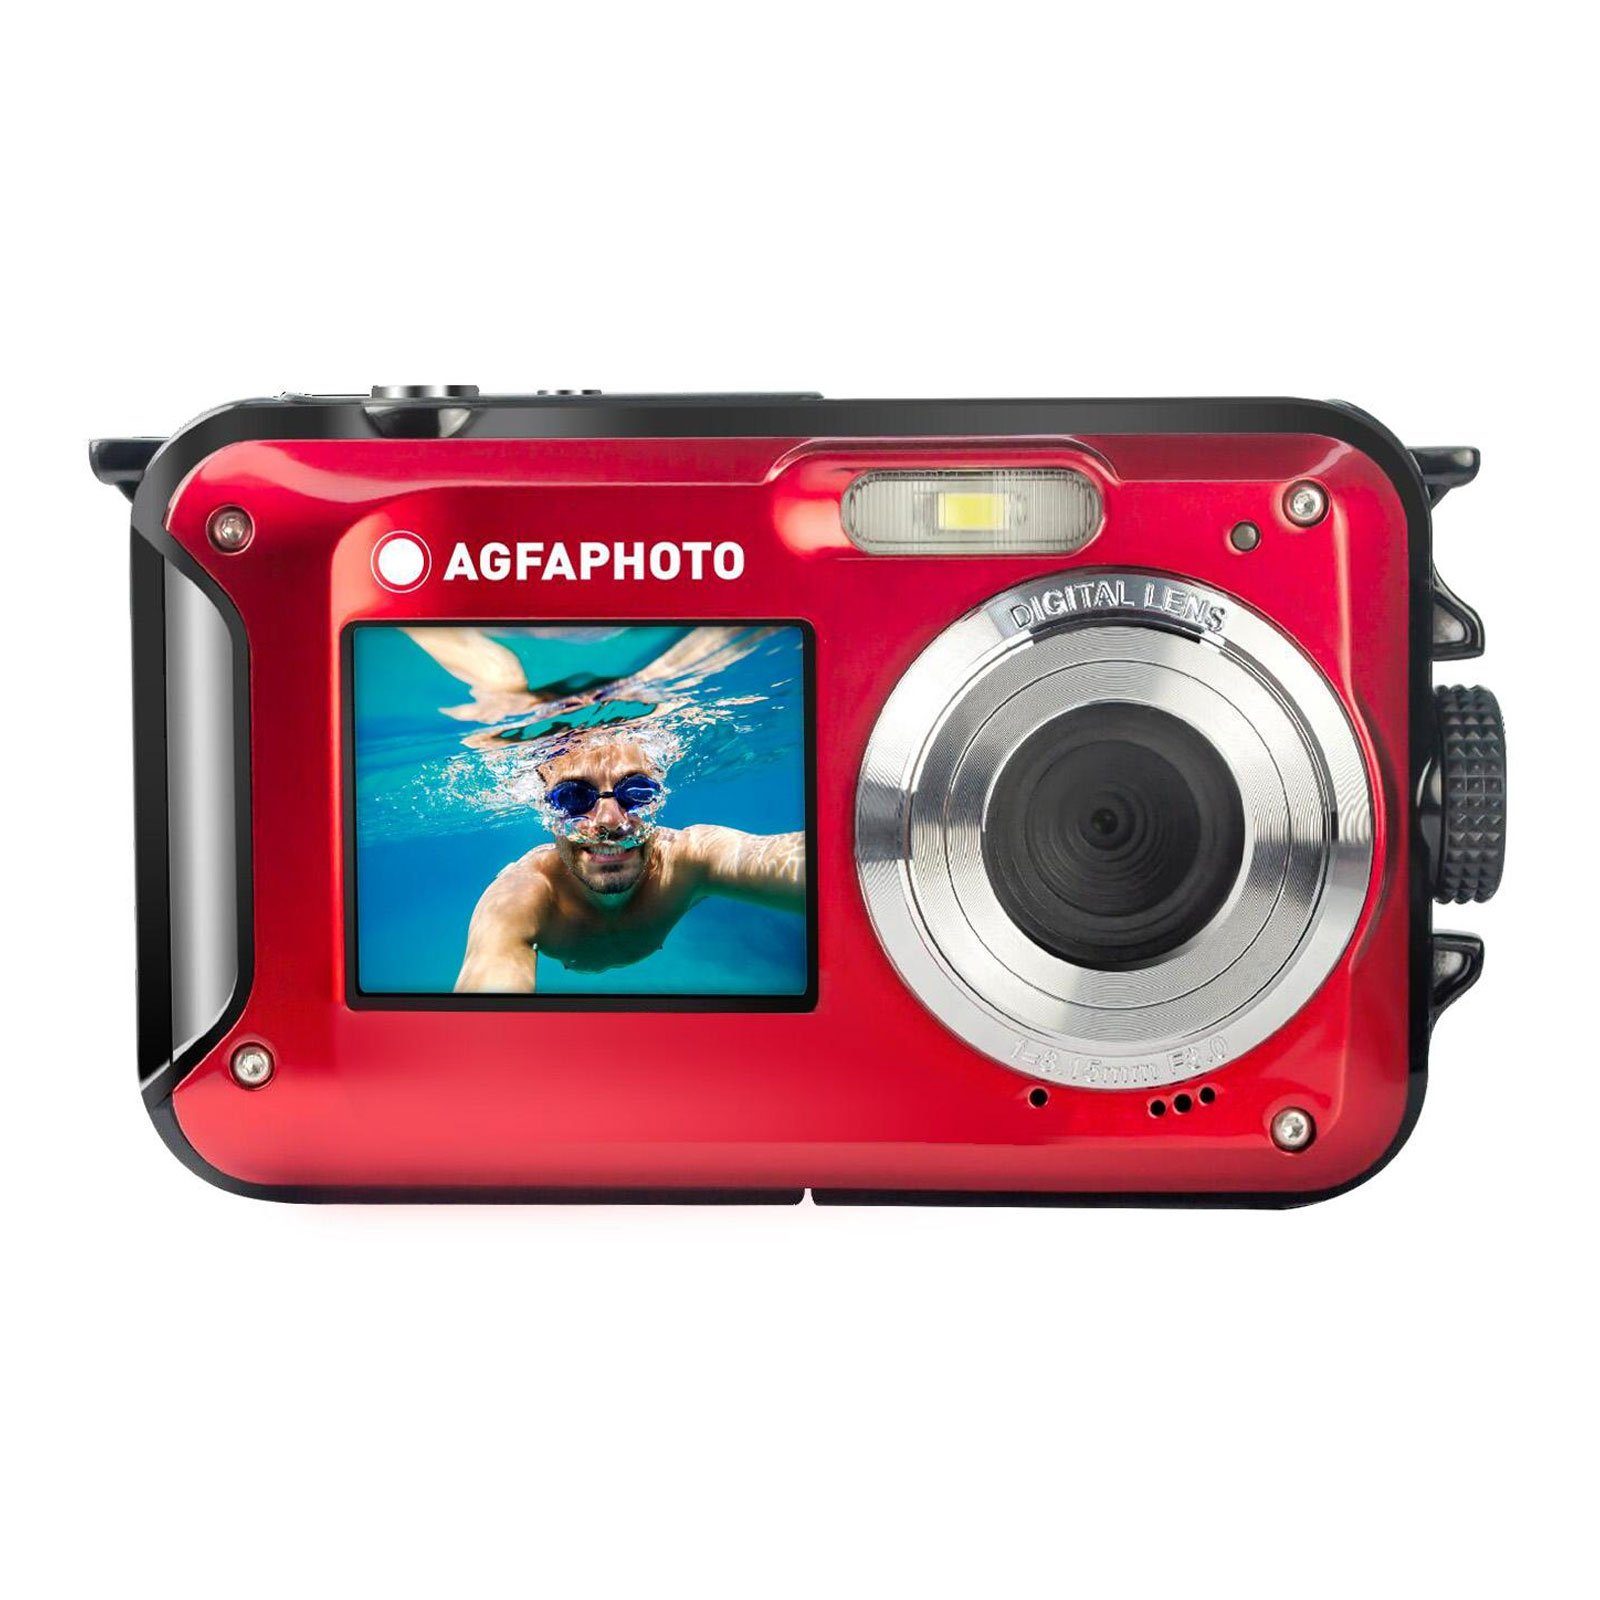 AGFA WP8000 Kompaktkamera (Gesichtserkennung, Bildstabilisierung) 16X zoom, digital